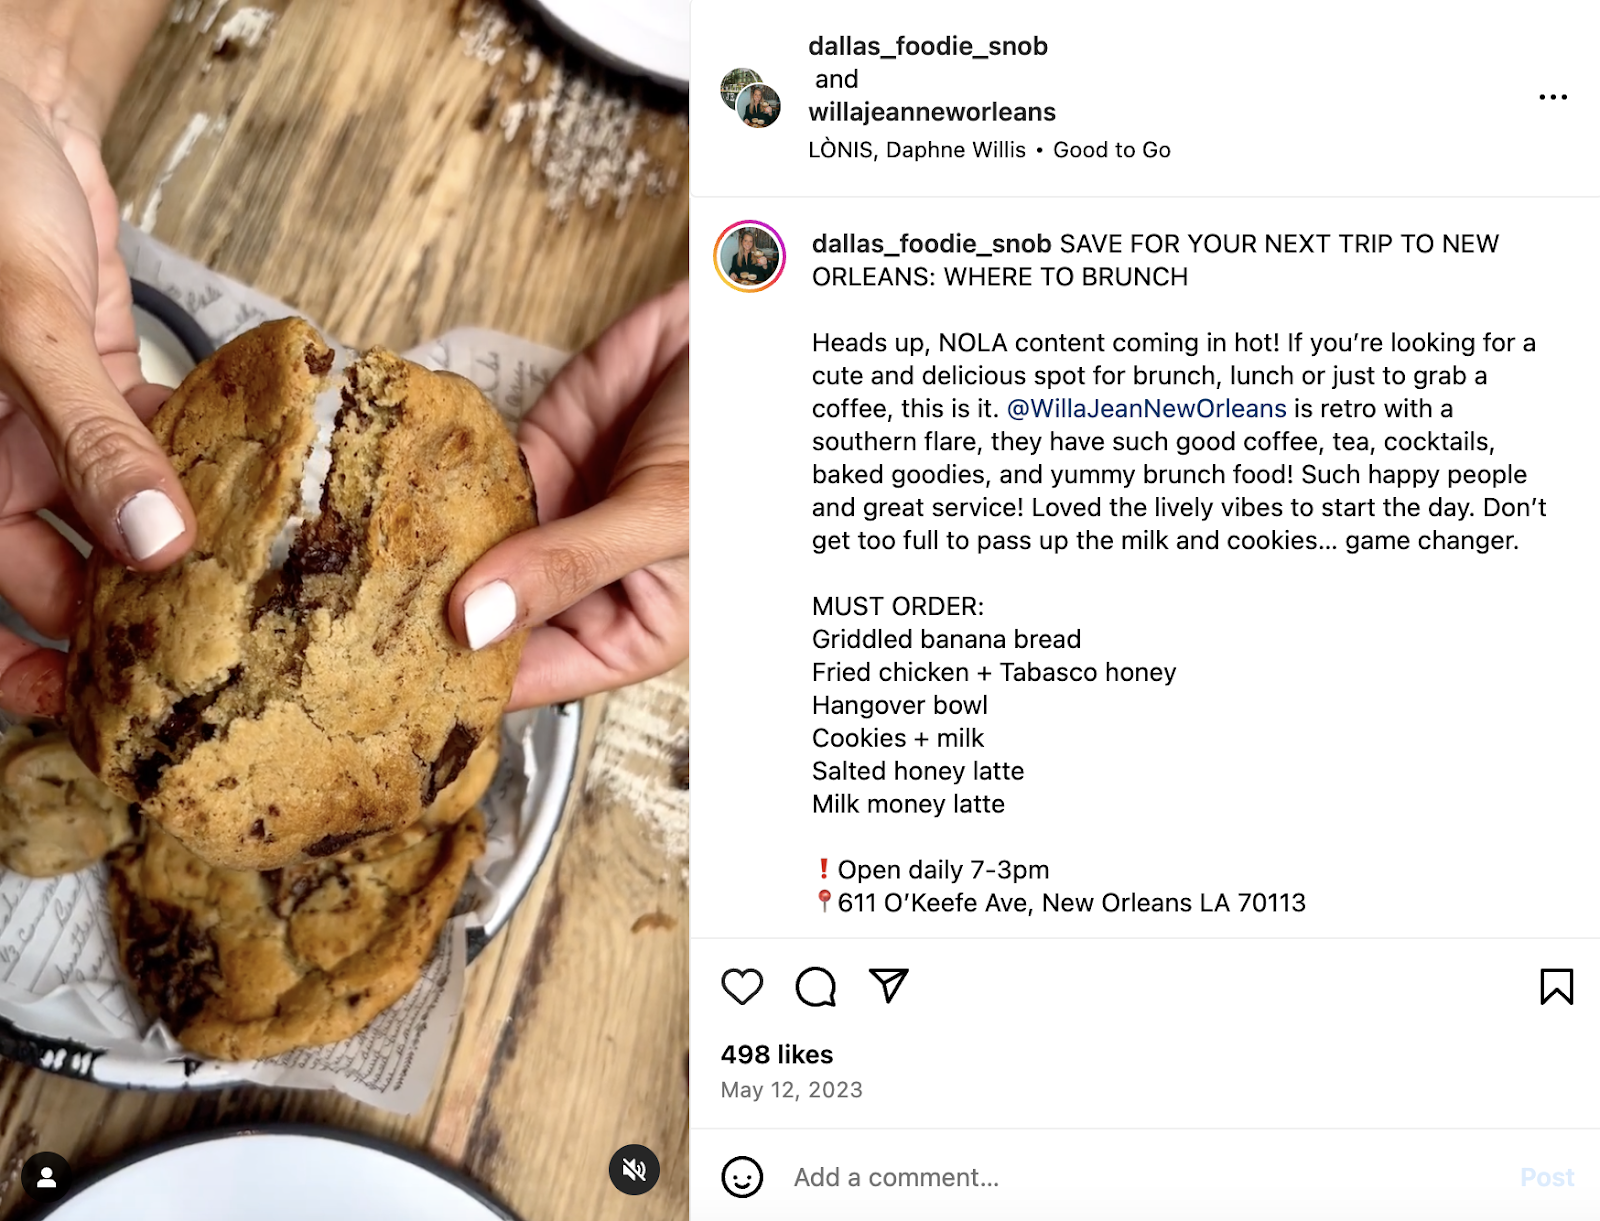 Idei creative de marketing pentru restaurante: o postare de influență pe care Willa Jean, un restaurant din New Orleans, a redistribuit-o pe pagina sa de Instagram.